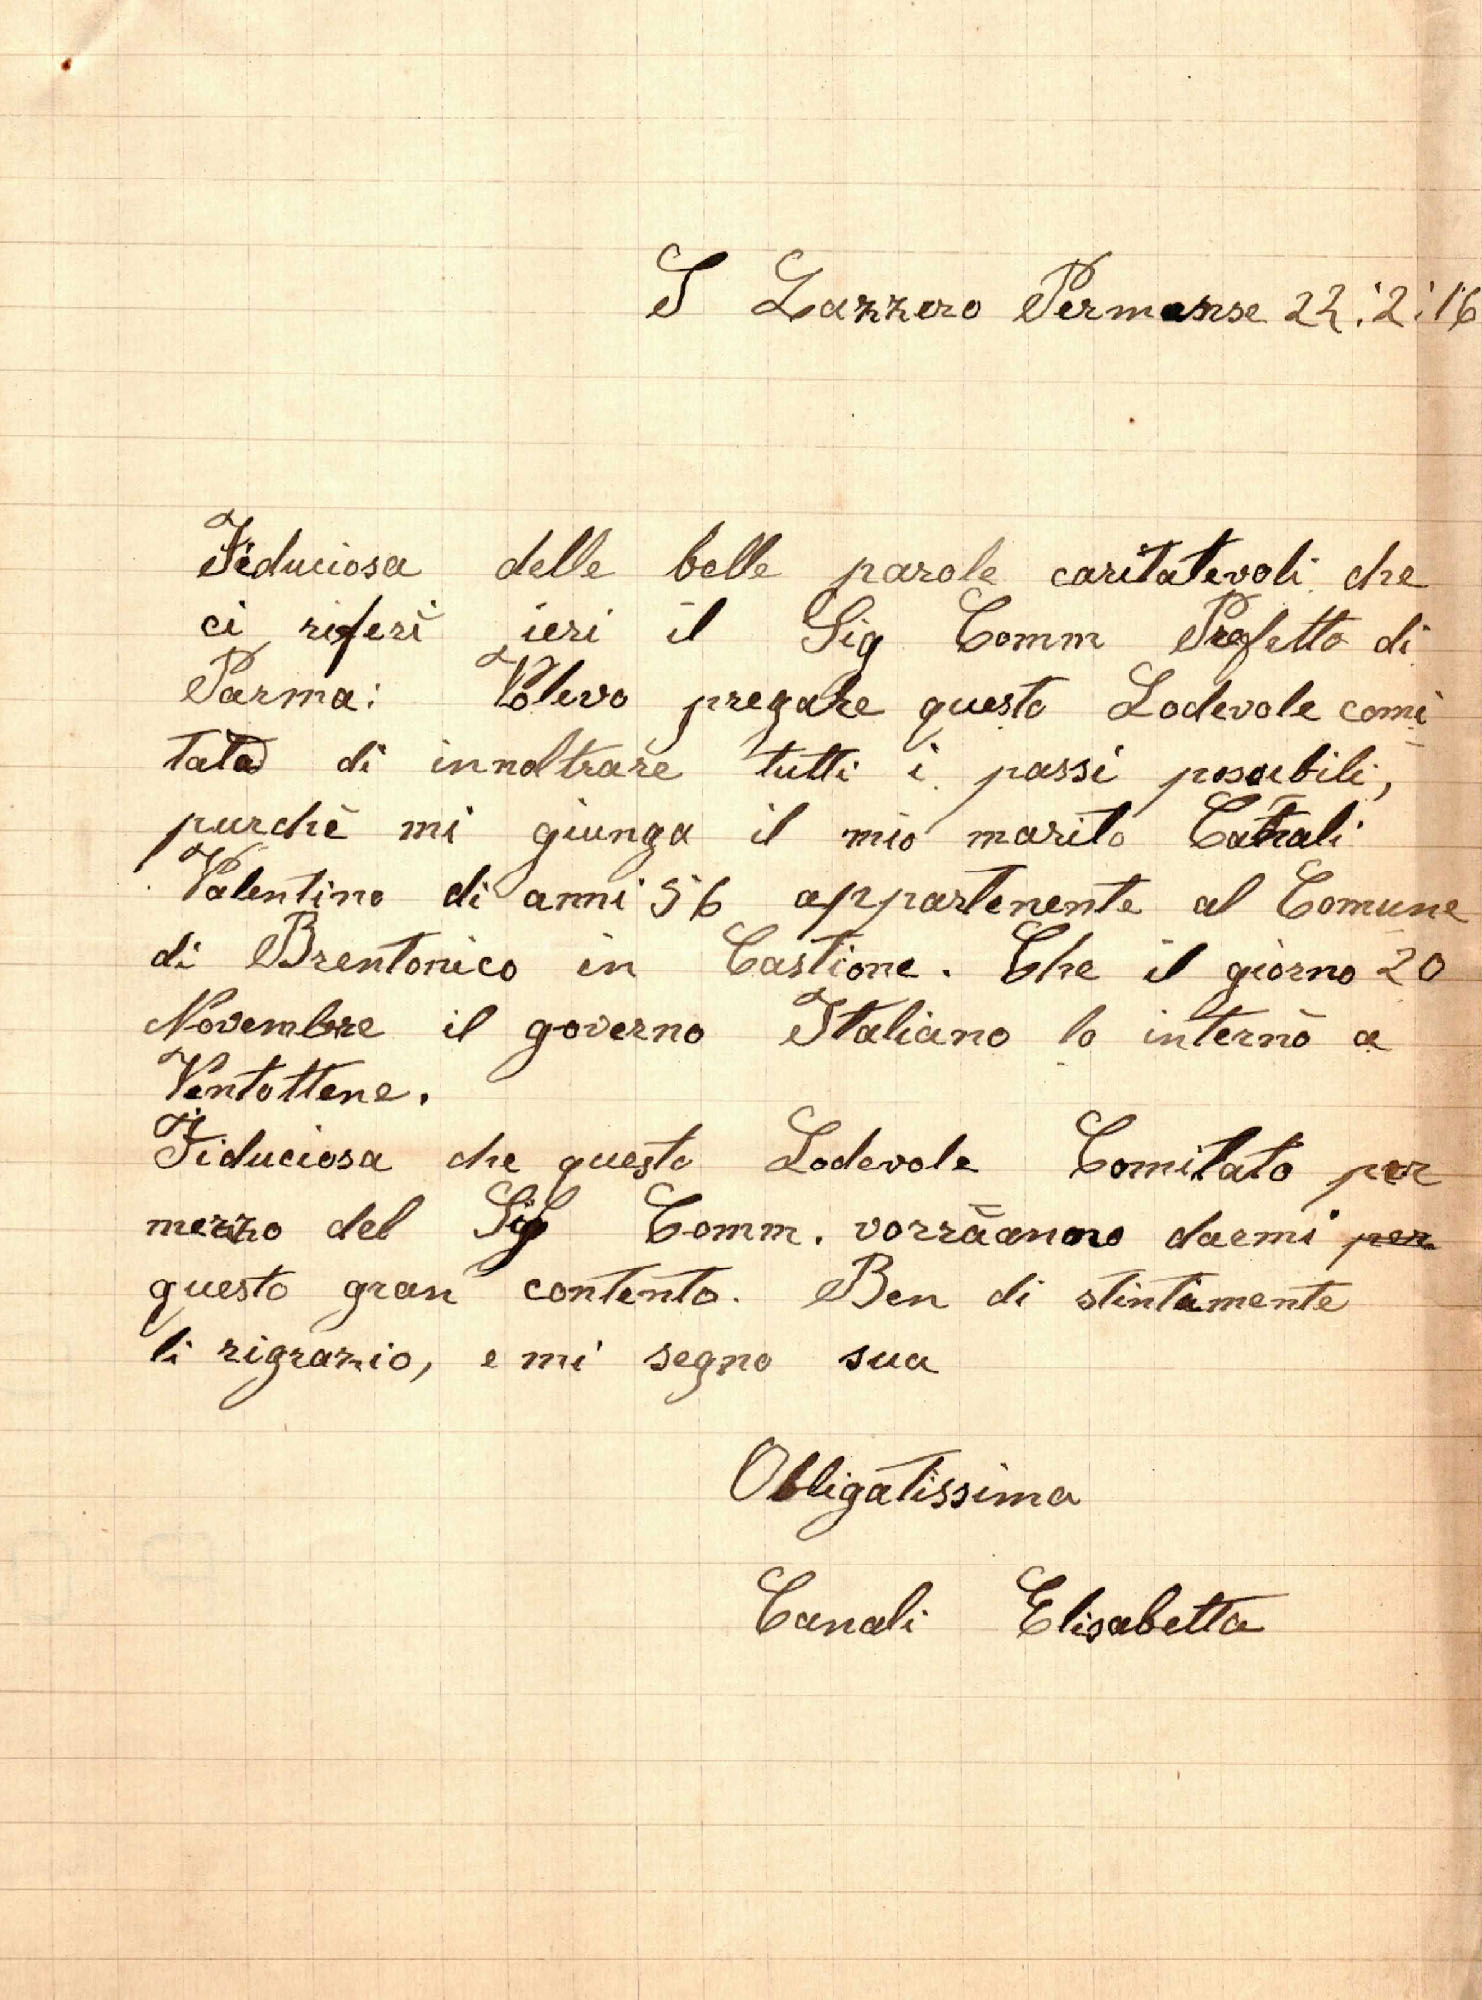 Istanza avanzata dalla profuga Elisabetta Canali al Comitato profughi di San Lazzaro Parmense – 22 febbraio 1916 (Archivio storico comunale di Parma)